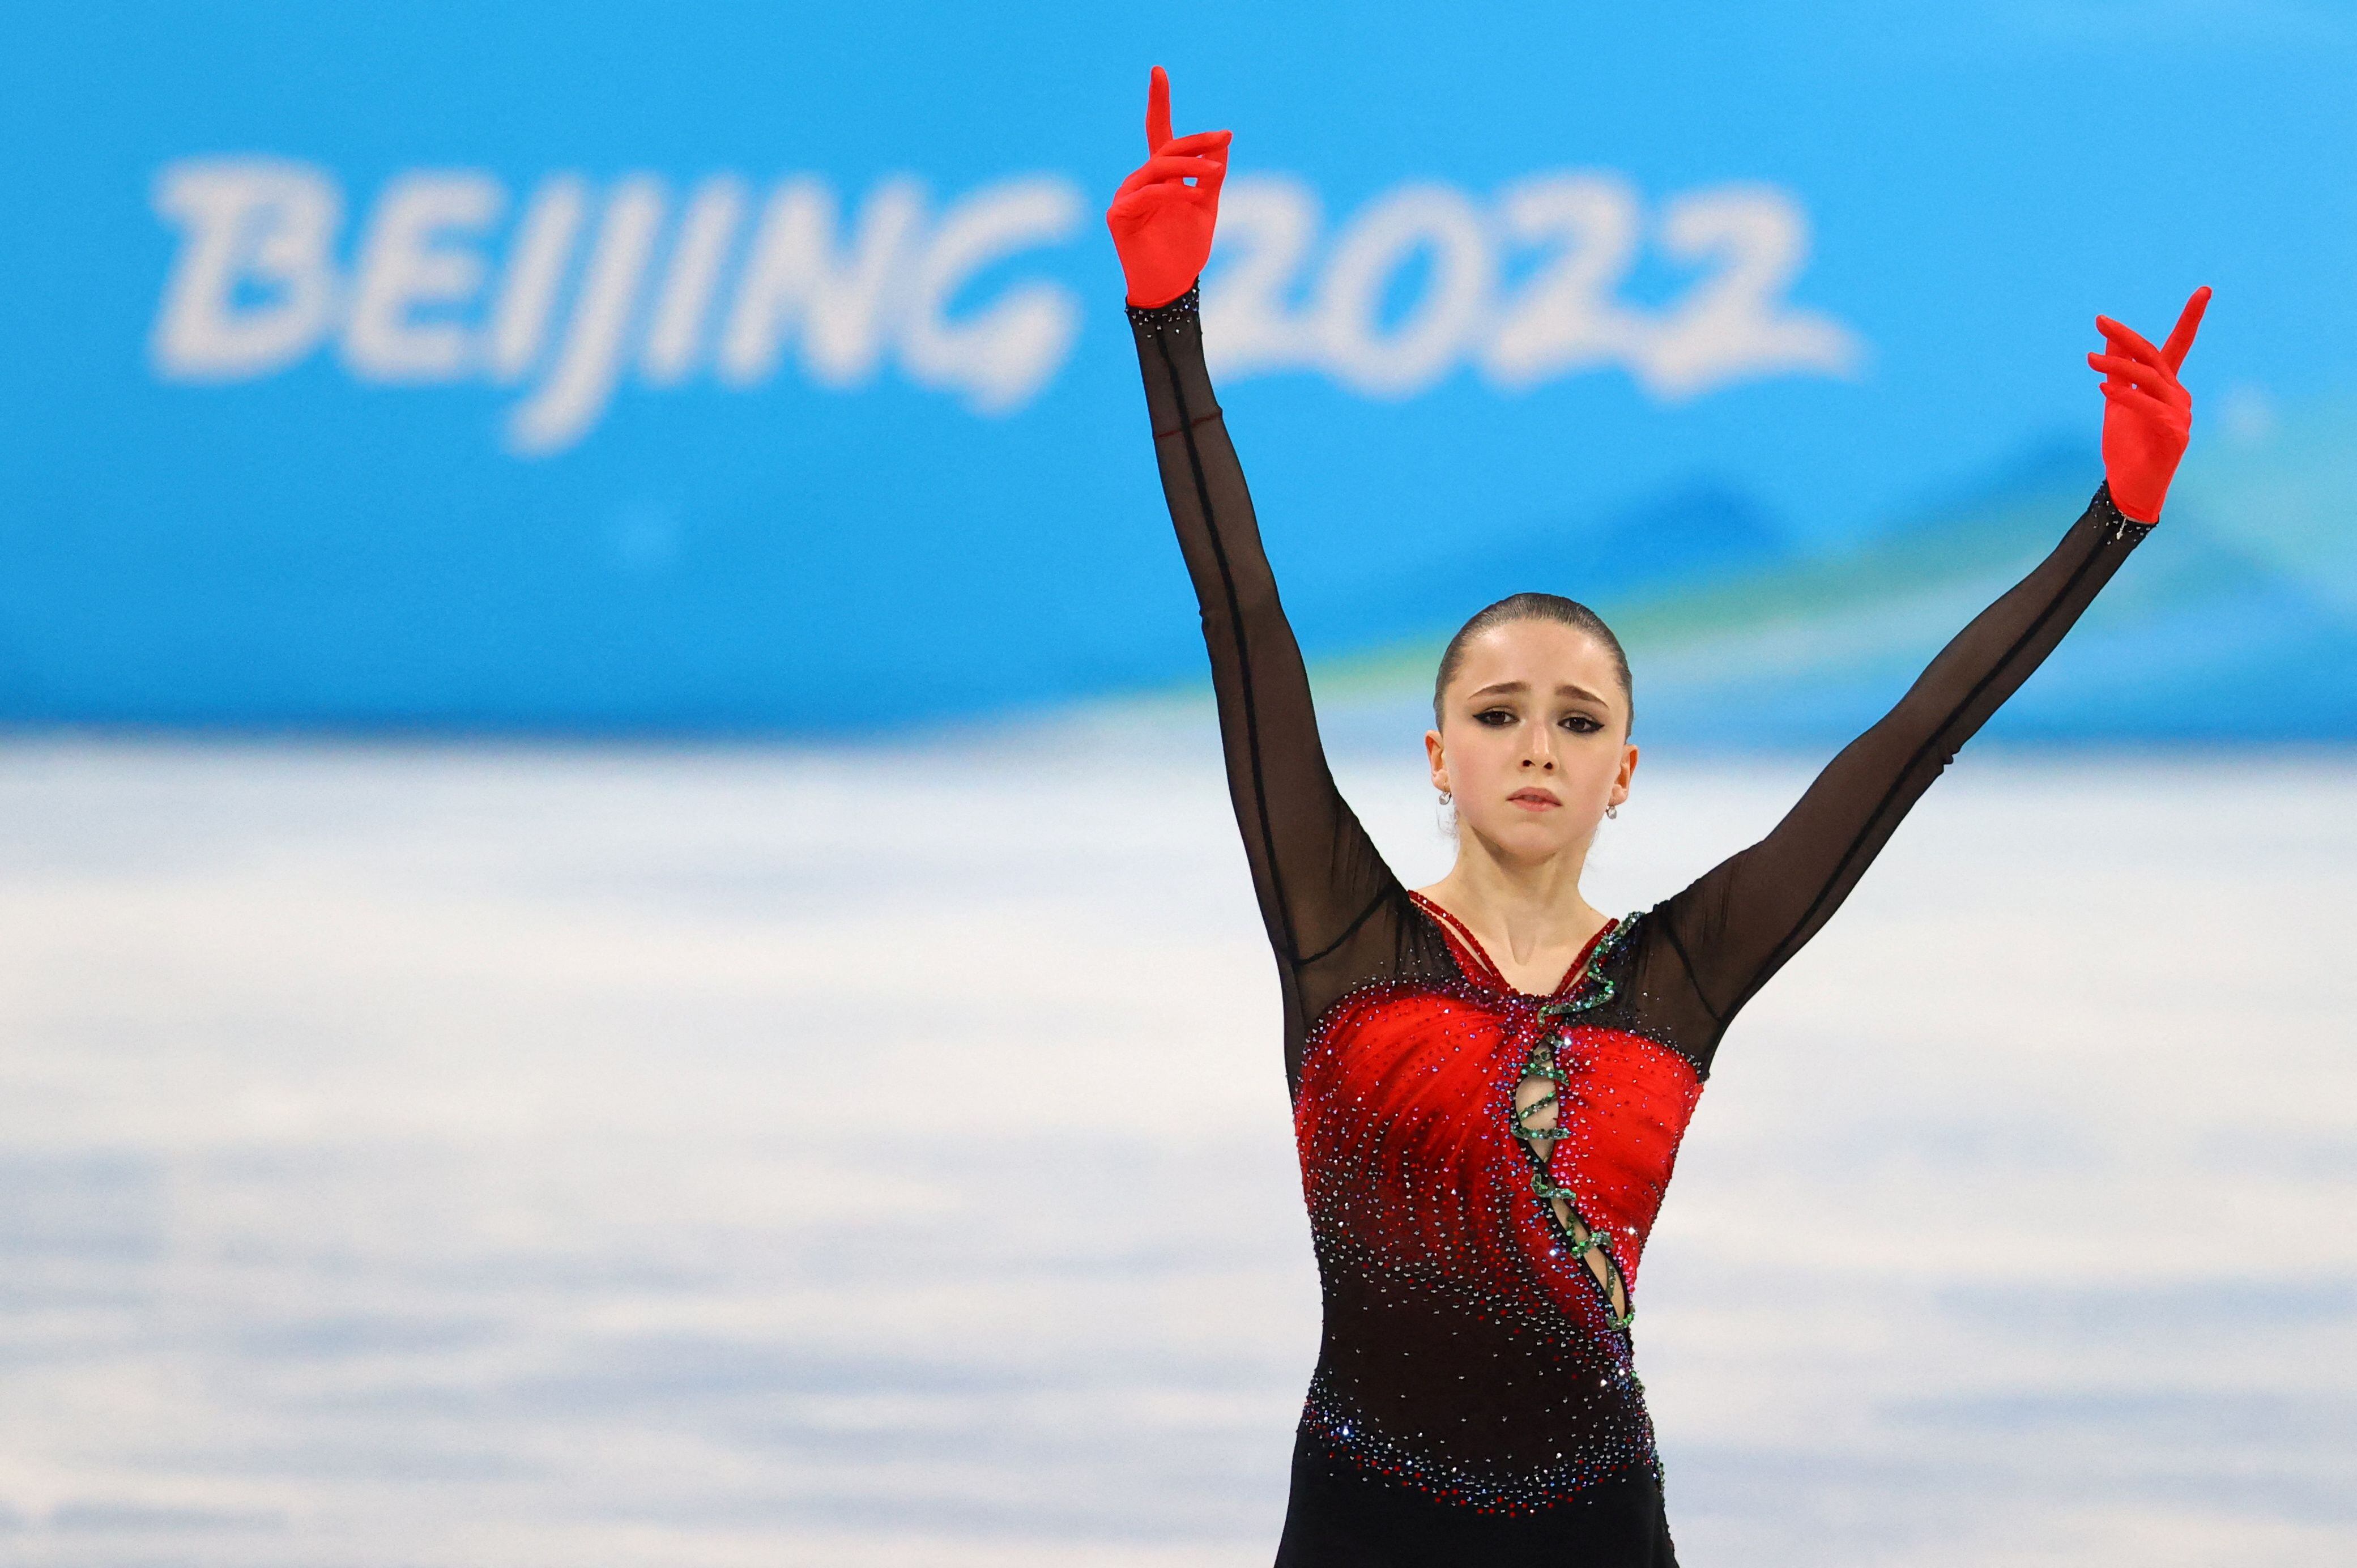 Tras dos años de espera, salió la sanción a la patinadora Kamila Valieva (Foto: Reuters)